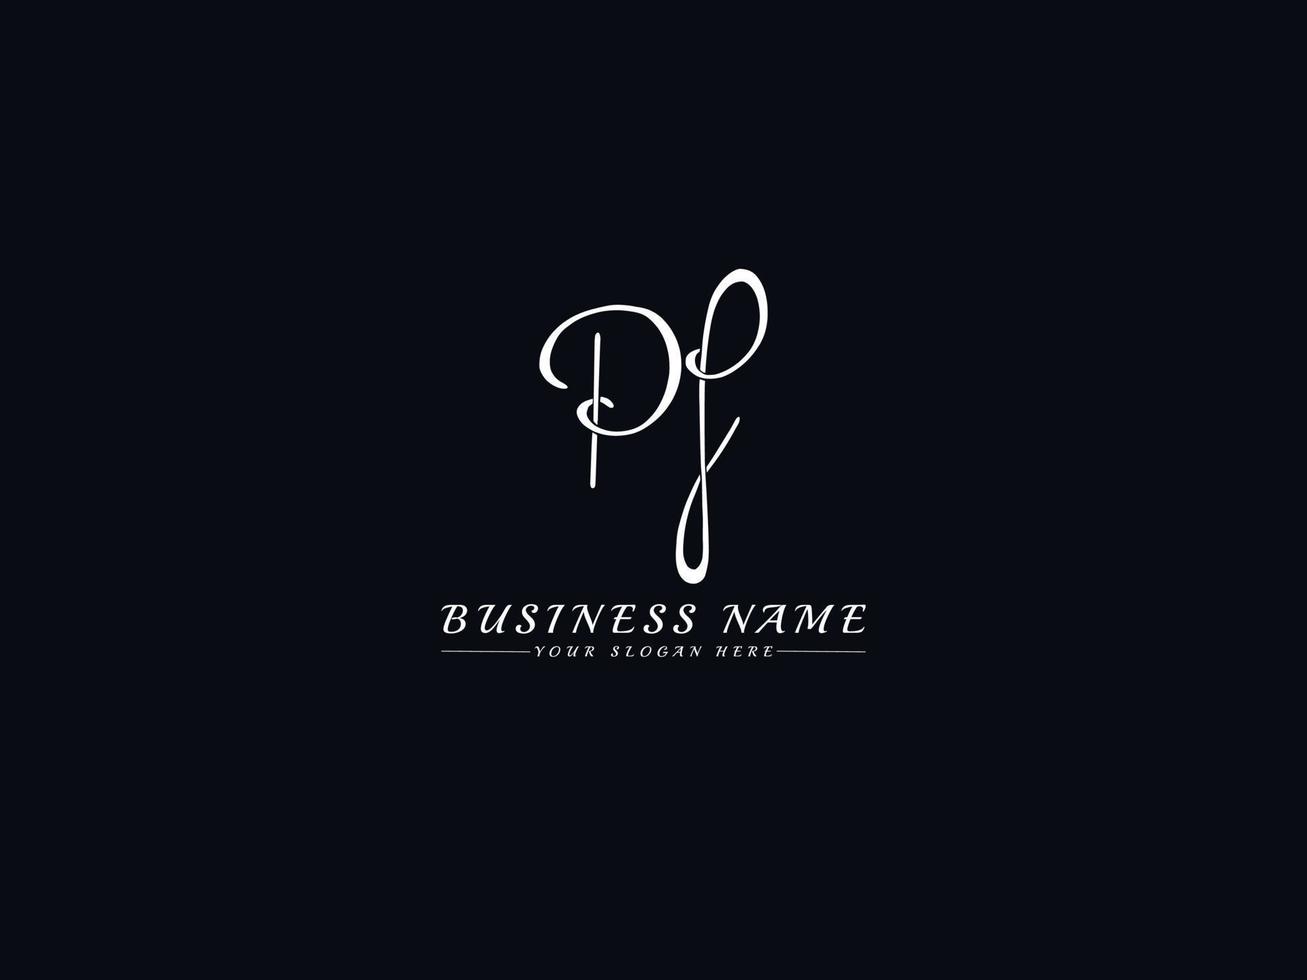 logotipo inicial de la firma pf, diseño exclusivo de la letra del logotipo pf vector